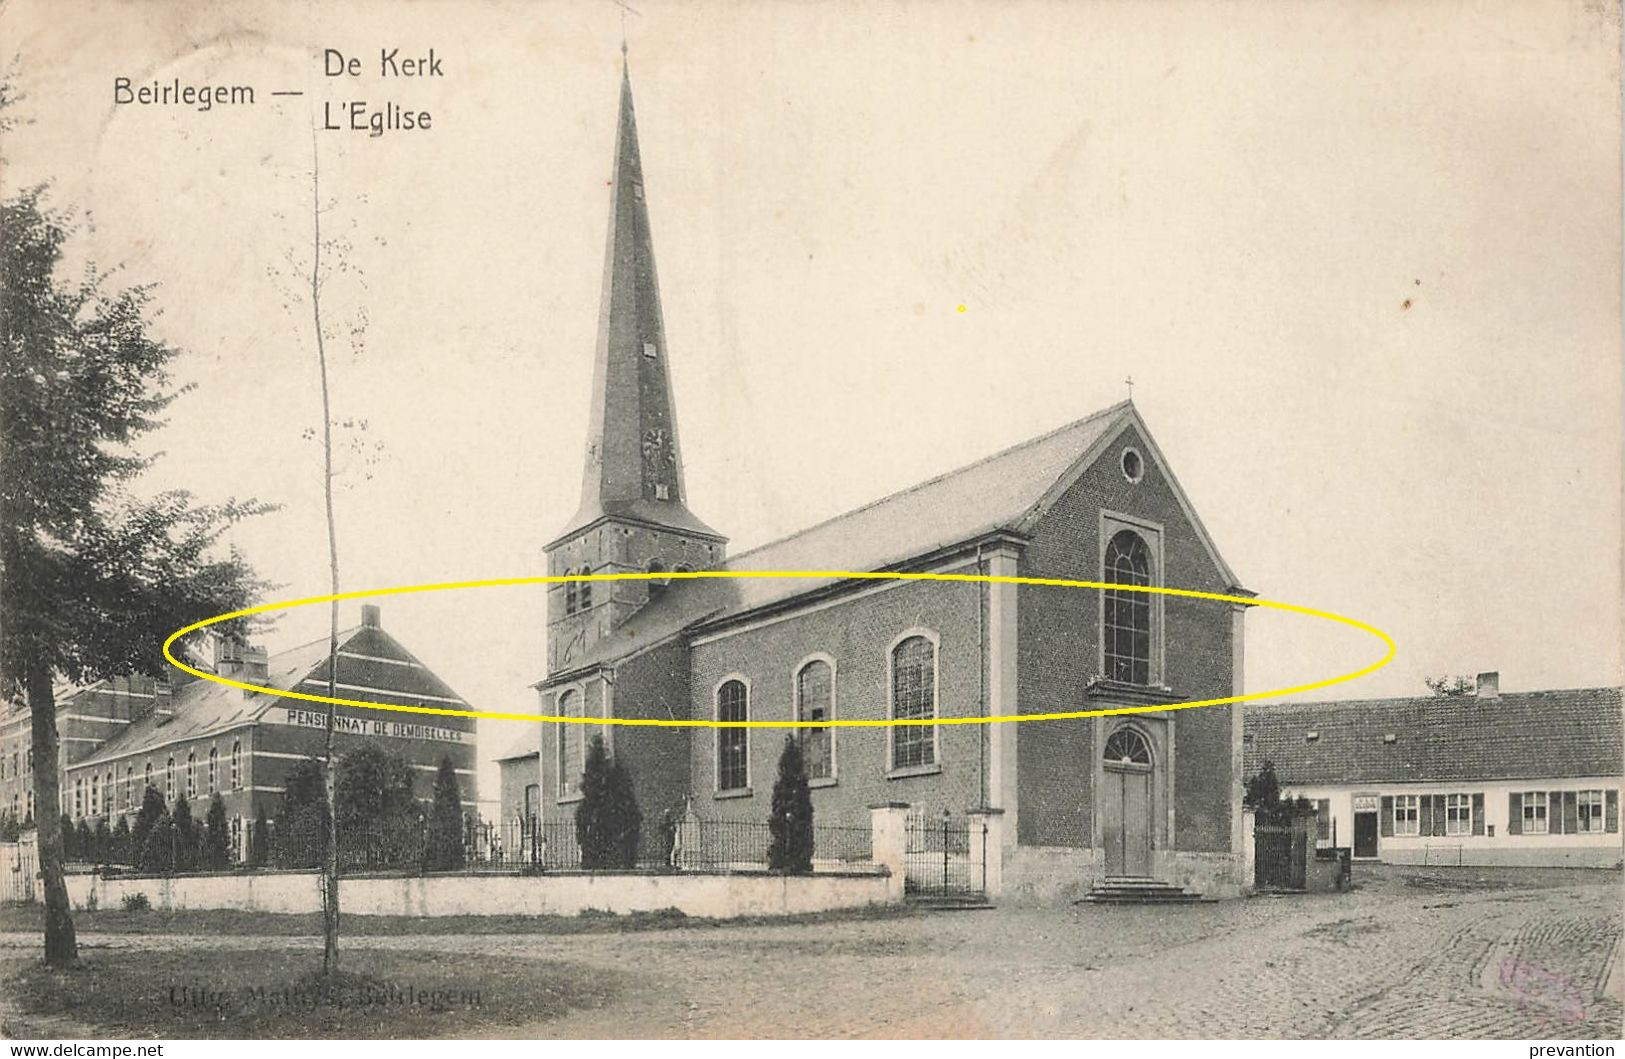 BEIRLEGEM - De Kerk - Carte Circulé En 1924 - Zwalm